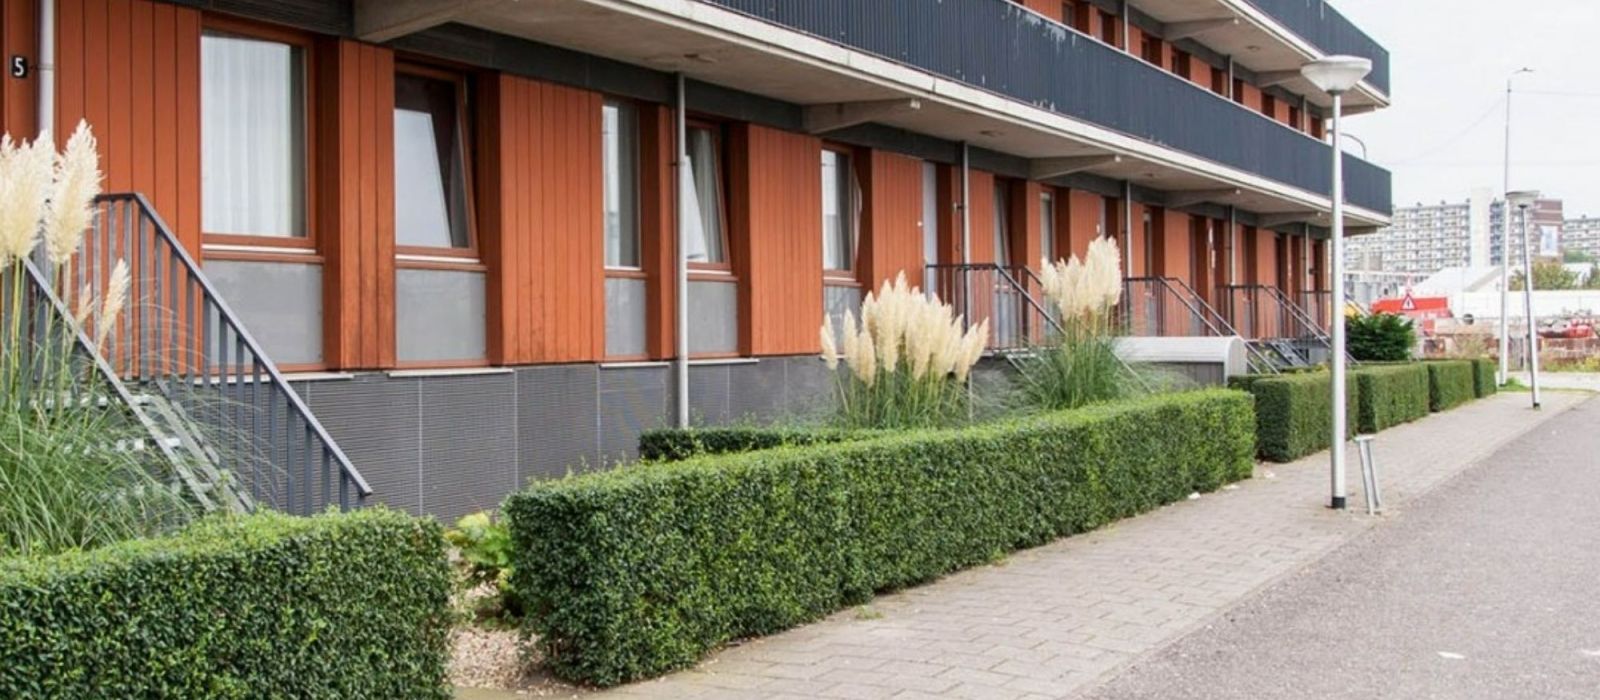 Gebouw woonlocatie De Groene Haven in Delft